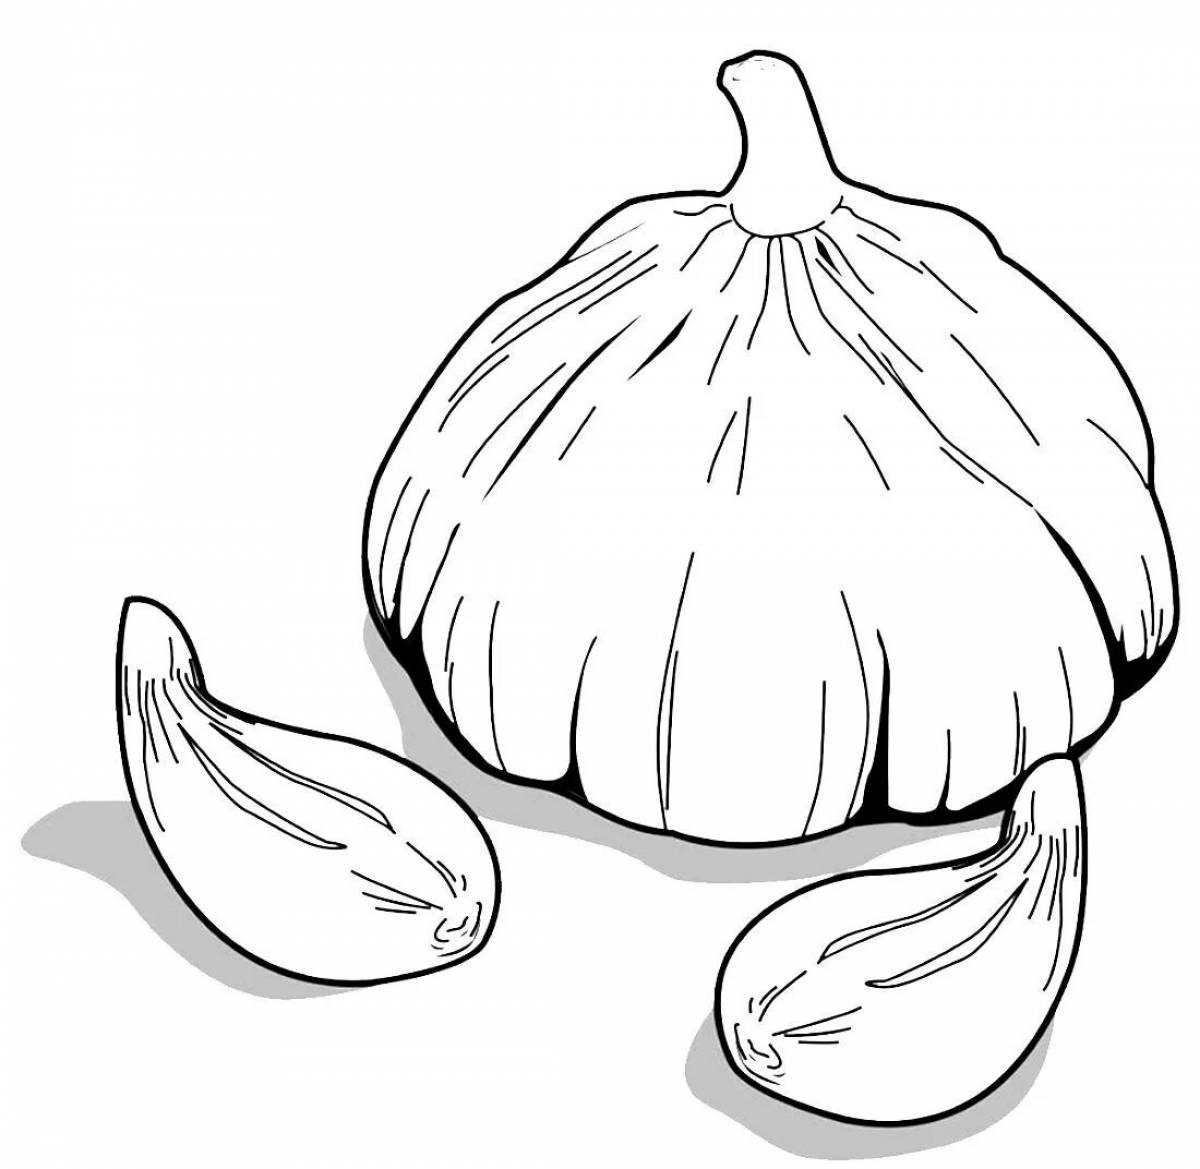 Children's garlic #22